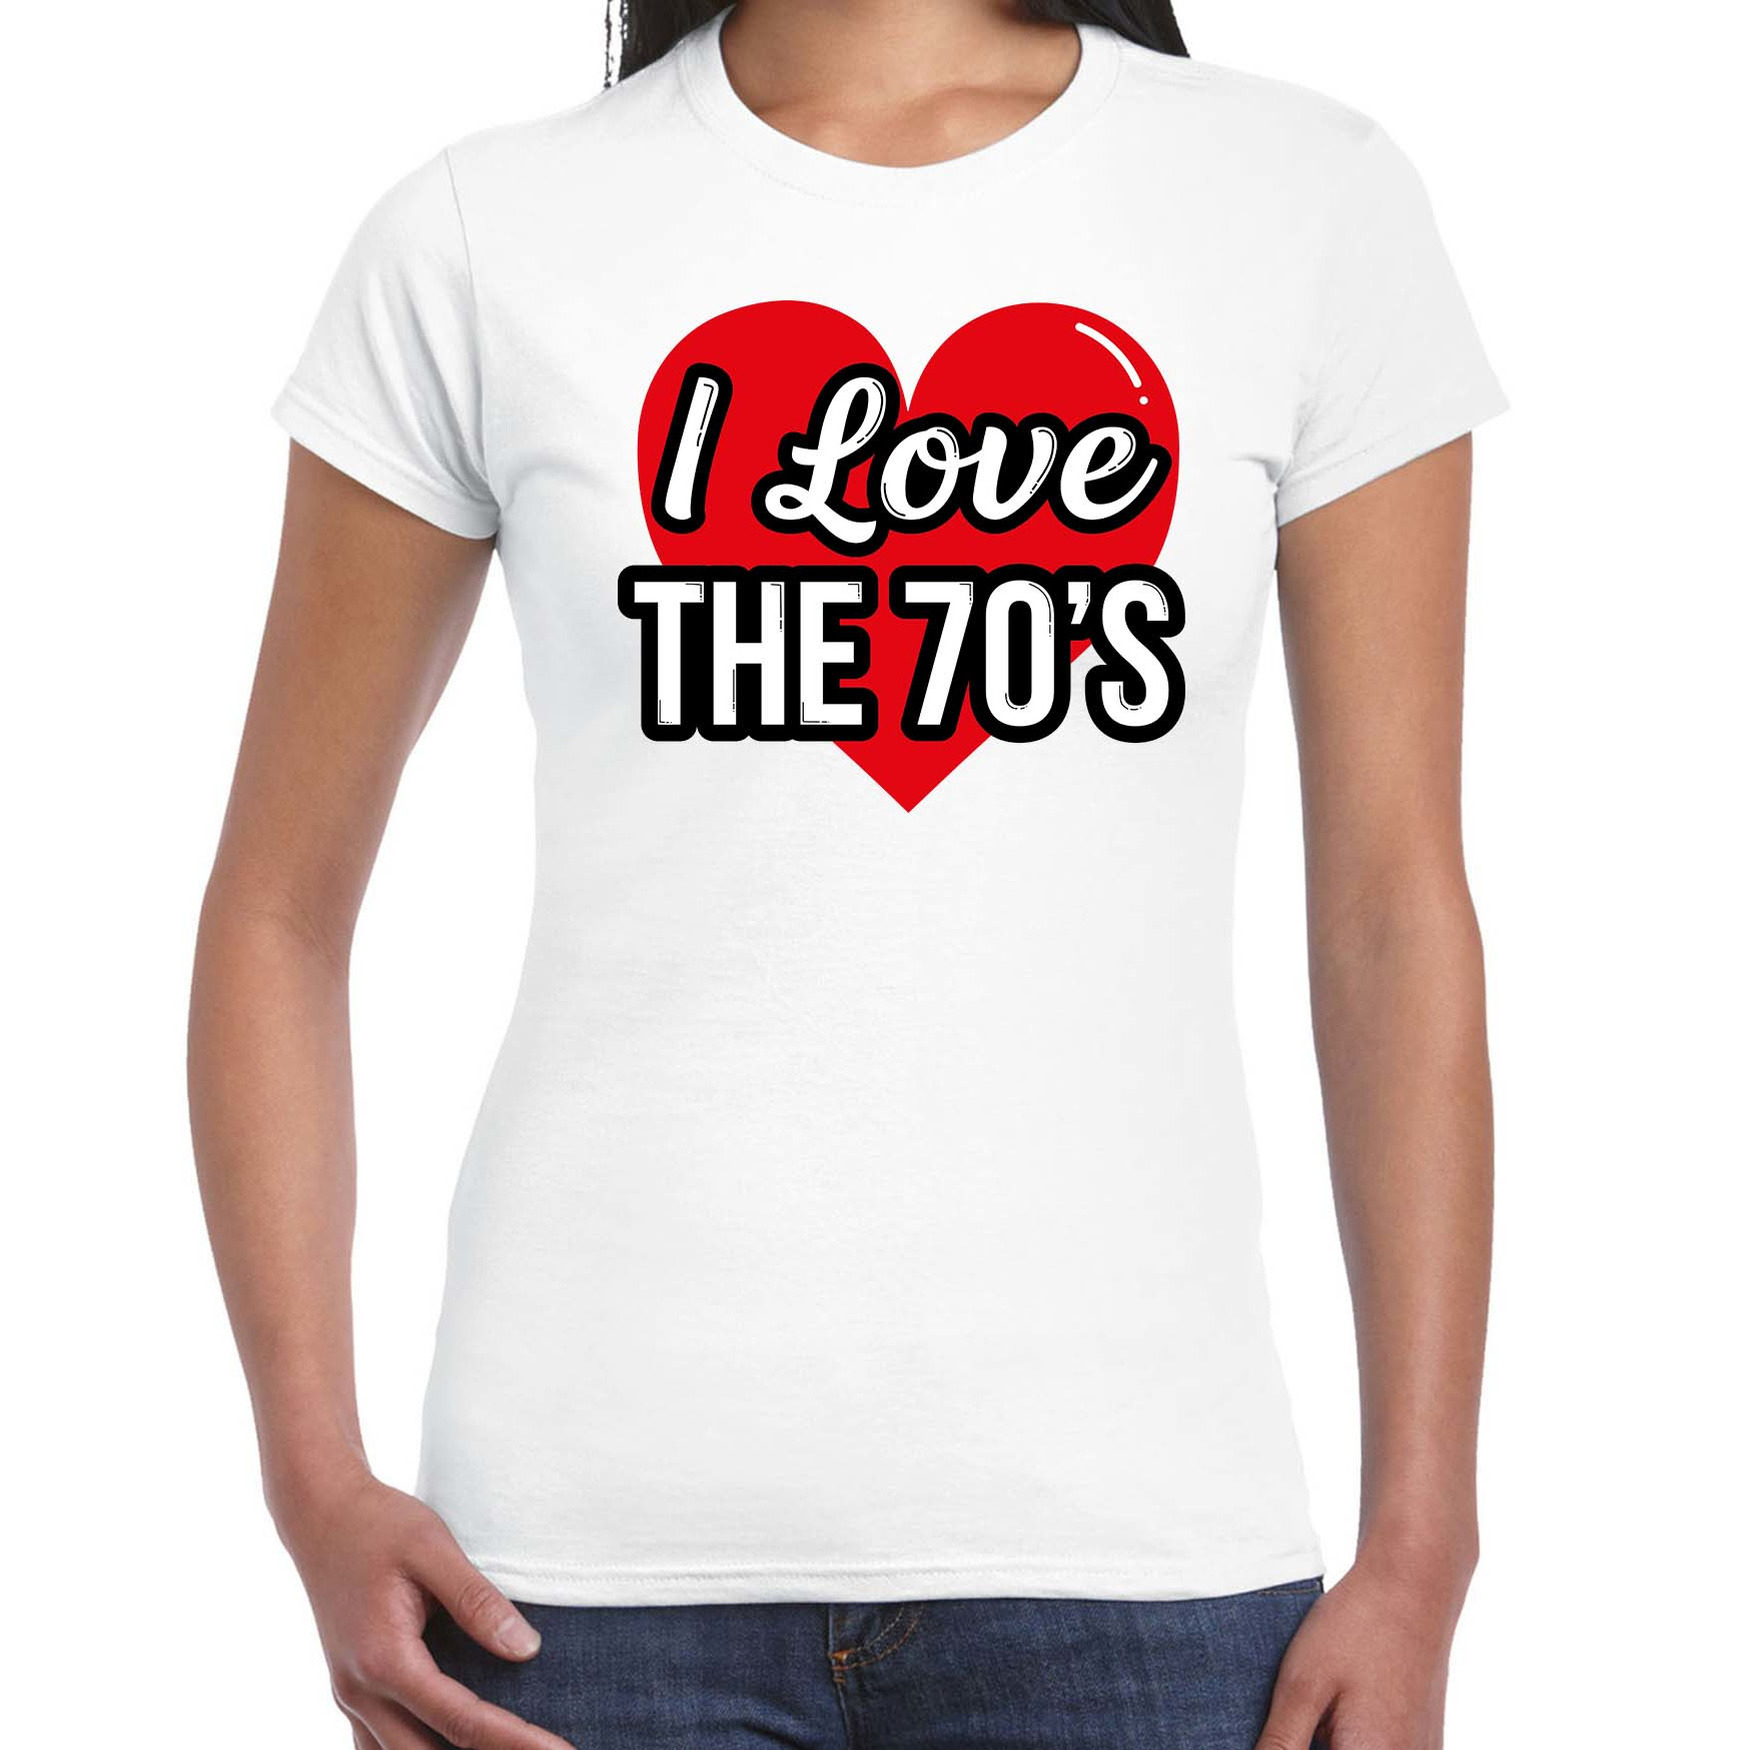 I love 70s verkleed t-shirt wit voor dames 70s party verkleed outfit